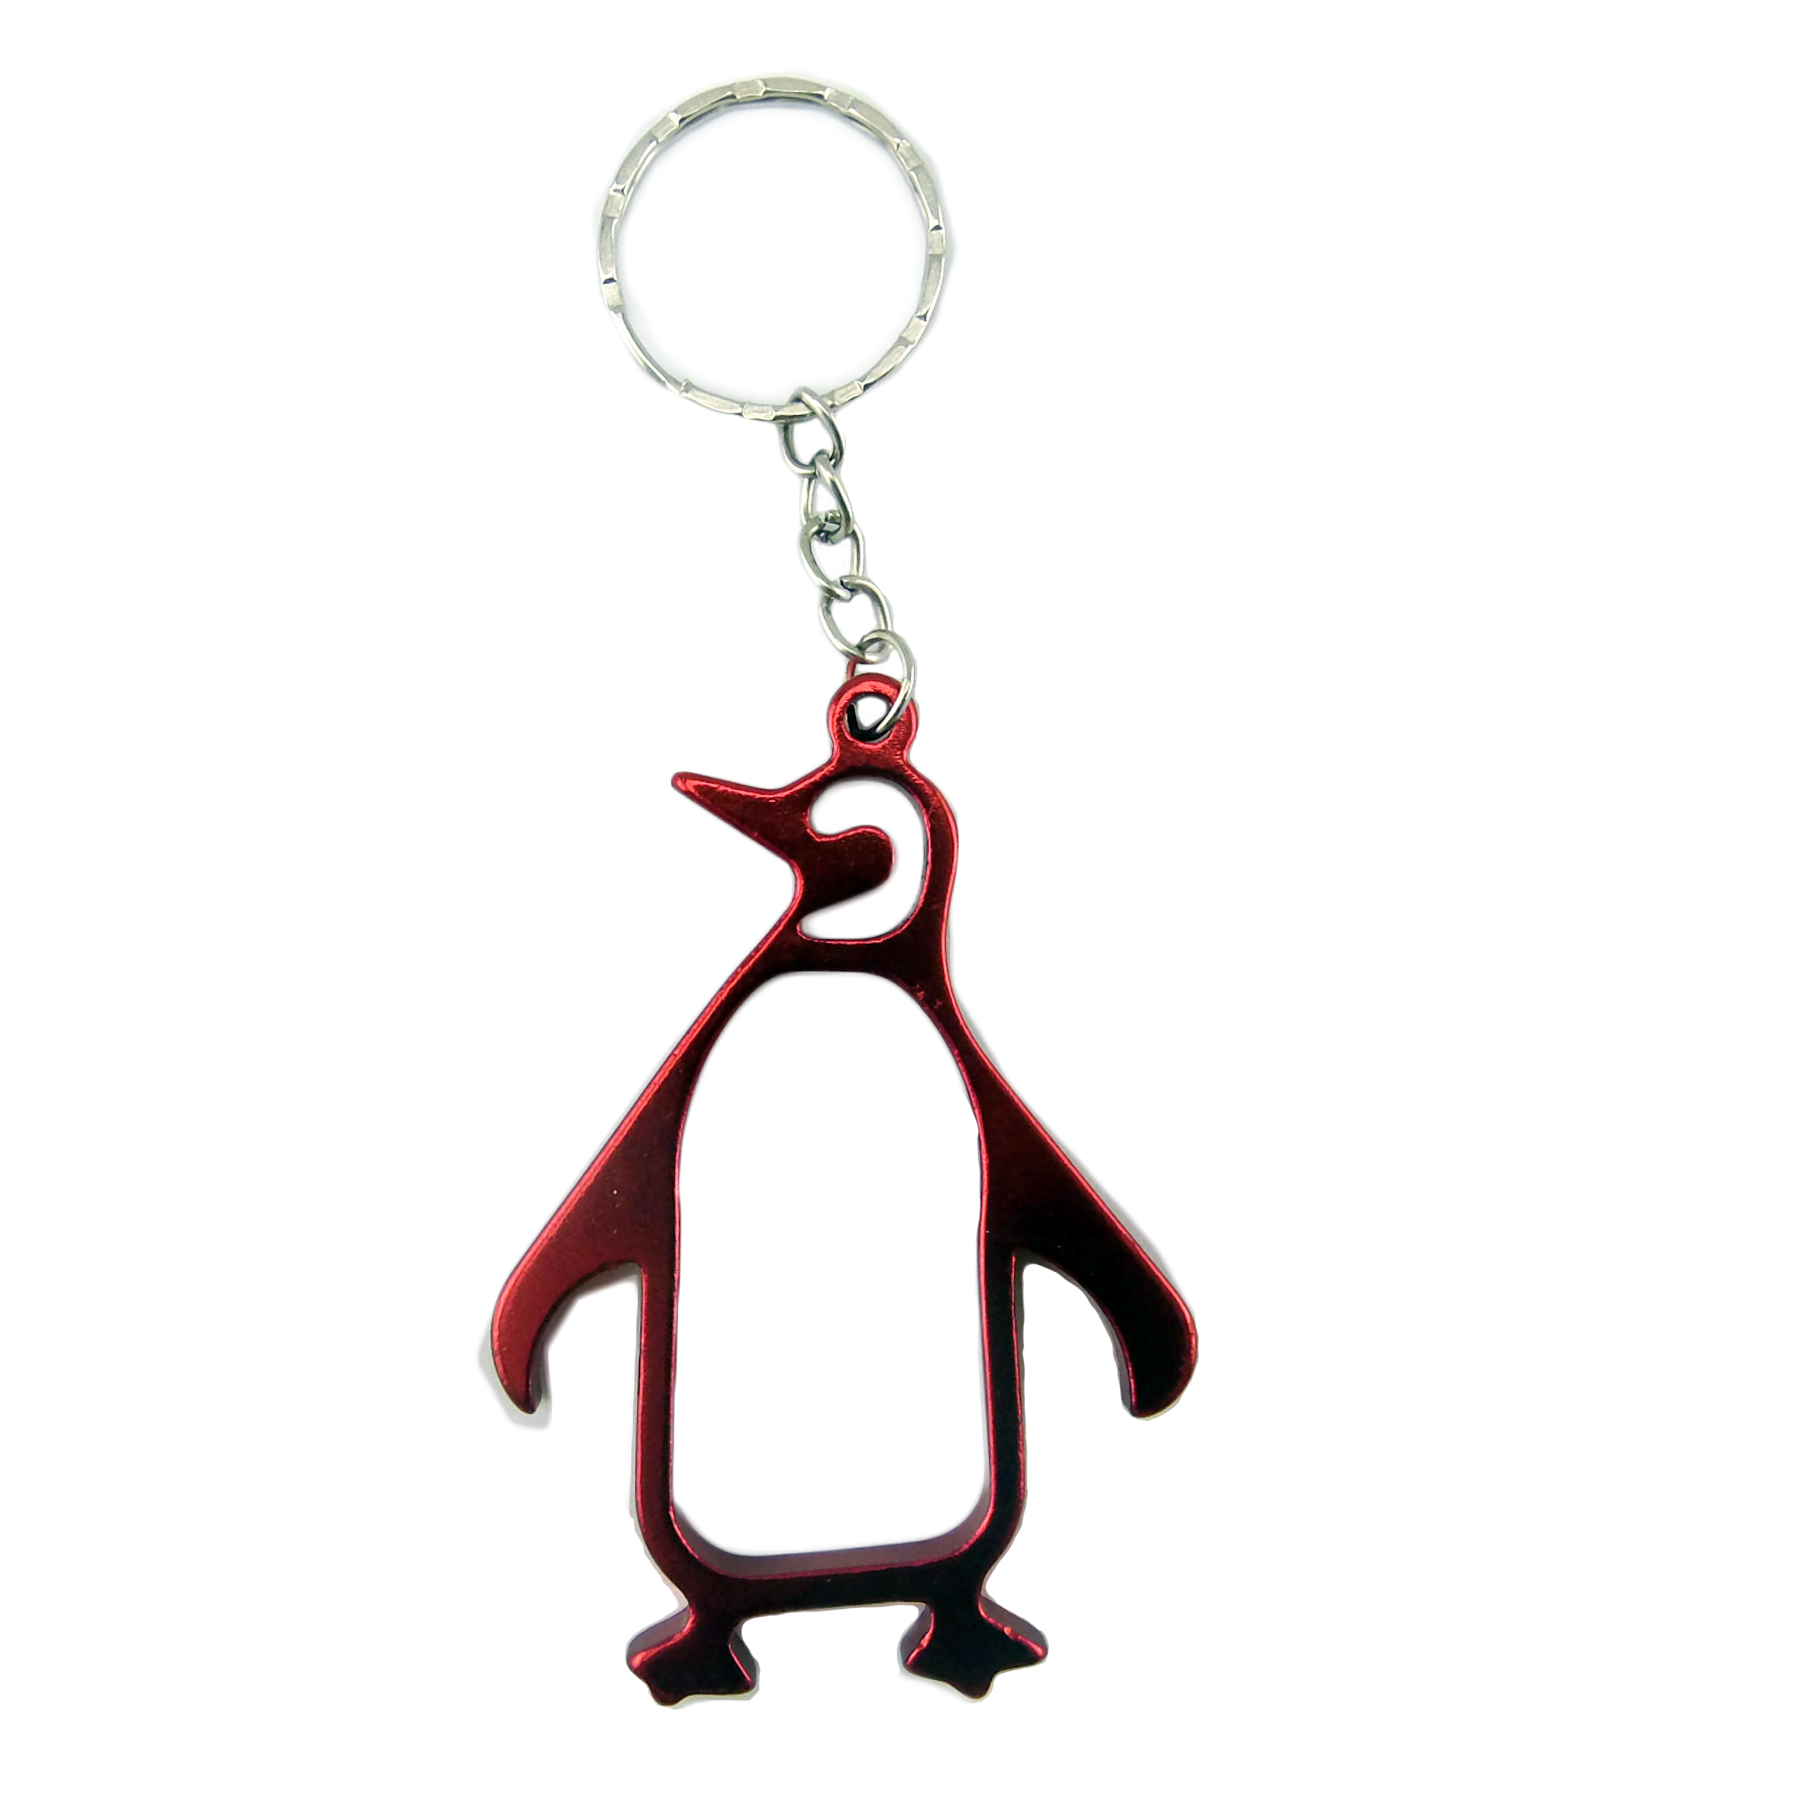 Penguin Shaped Bottle Opener Key Chain